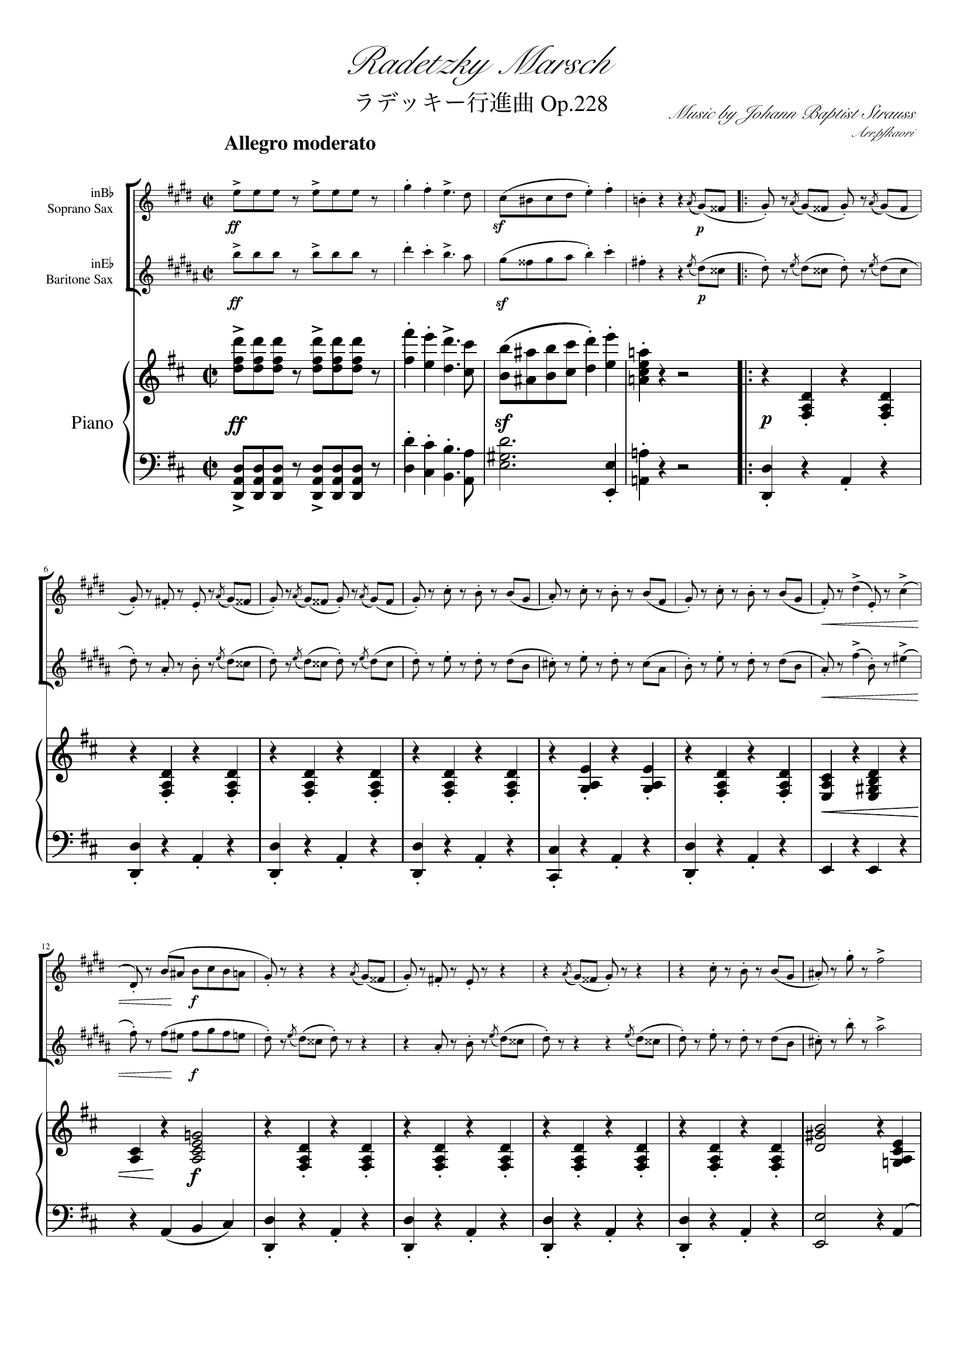 ヨハンシュトラウス1世 - ラデッキー行進曲 (D・ピアノトリオ/ソプラノサックス&バリトンサックス) by pfkaori